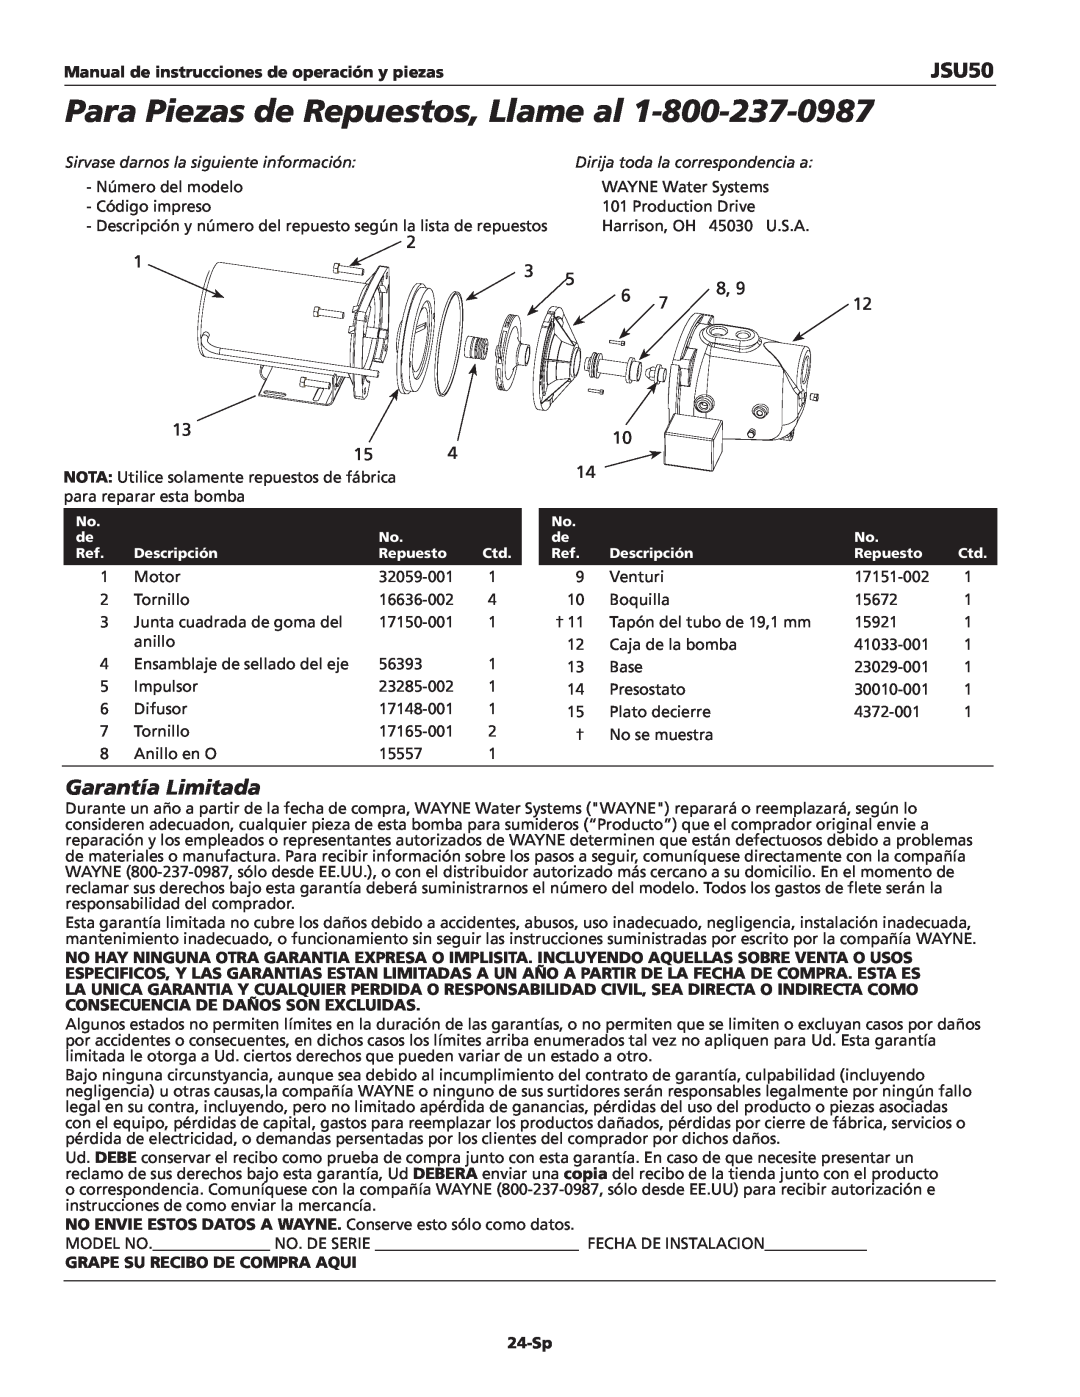 Wayne JSU50 Para Piezas de Repuestos, Llame al, Garantía Limitada, Manual de instrucciones de operación y piezas, 24-Sp 